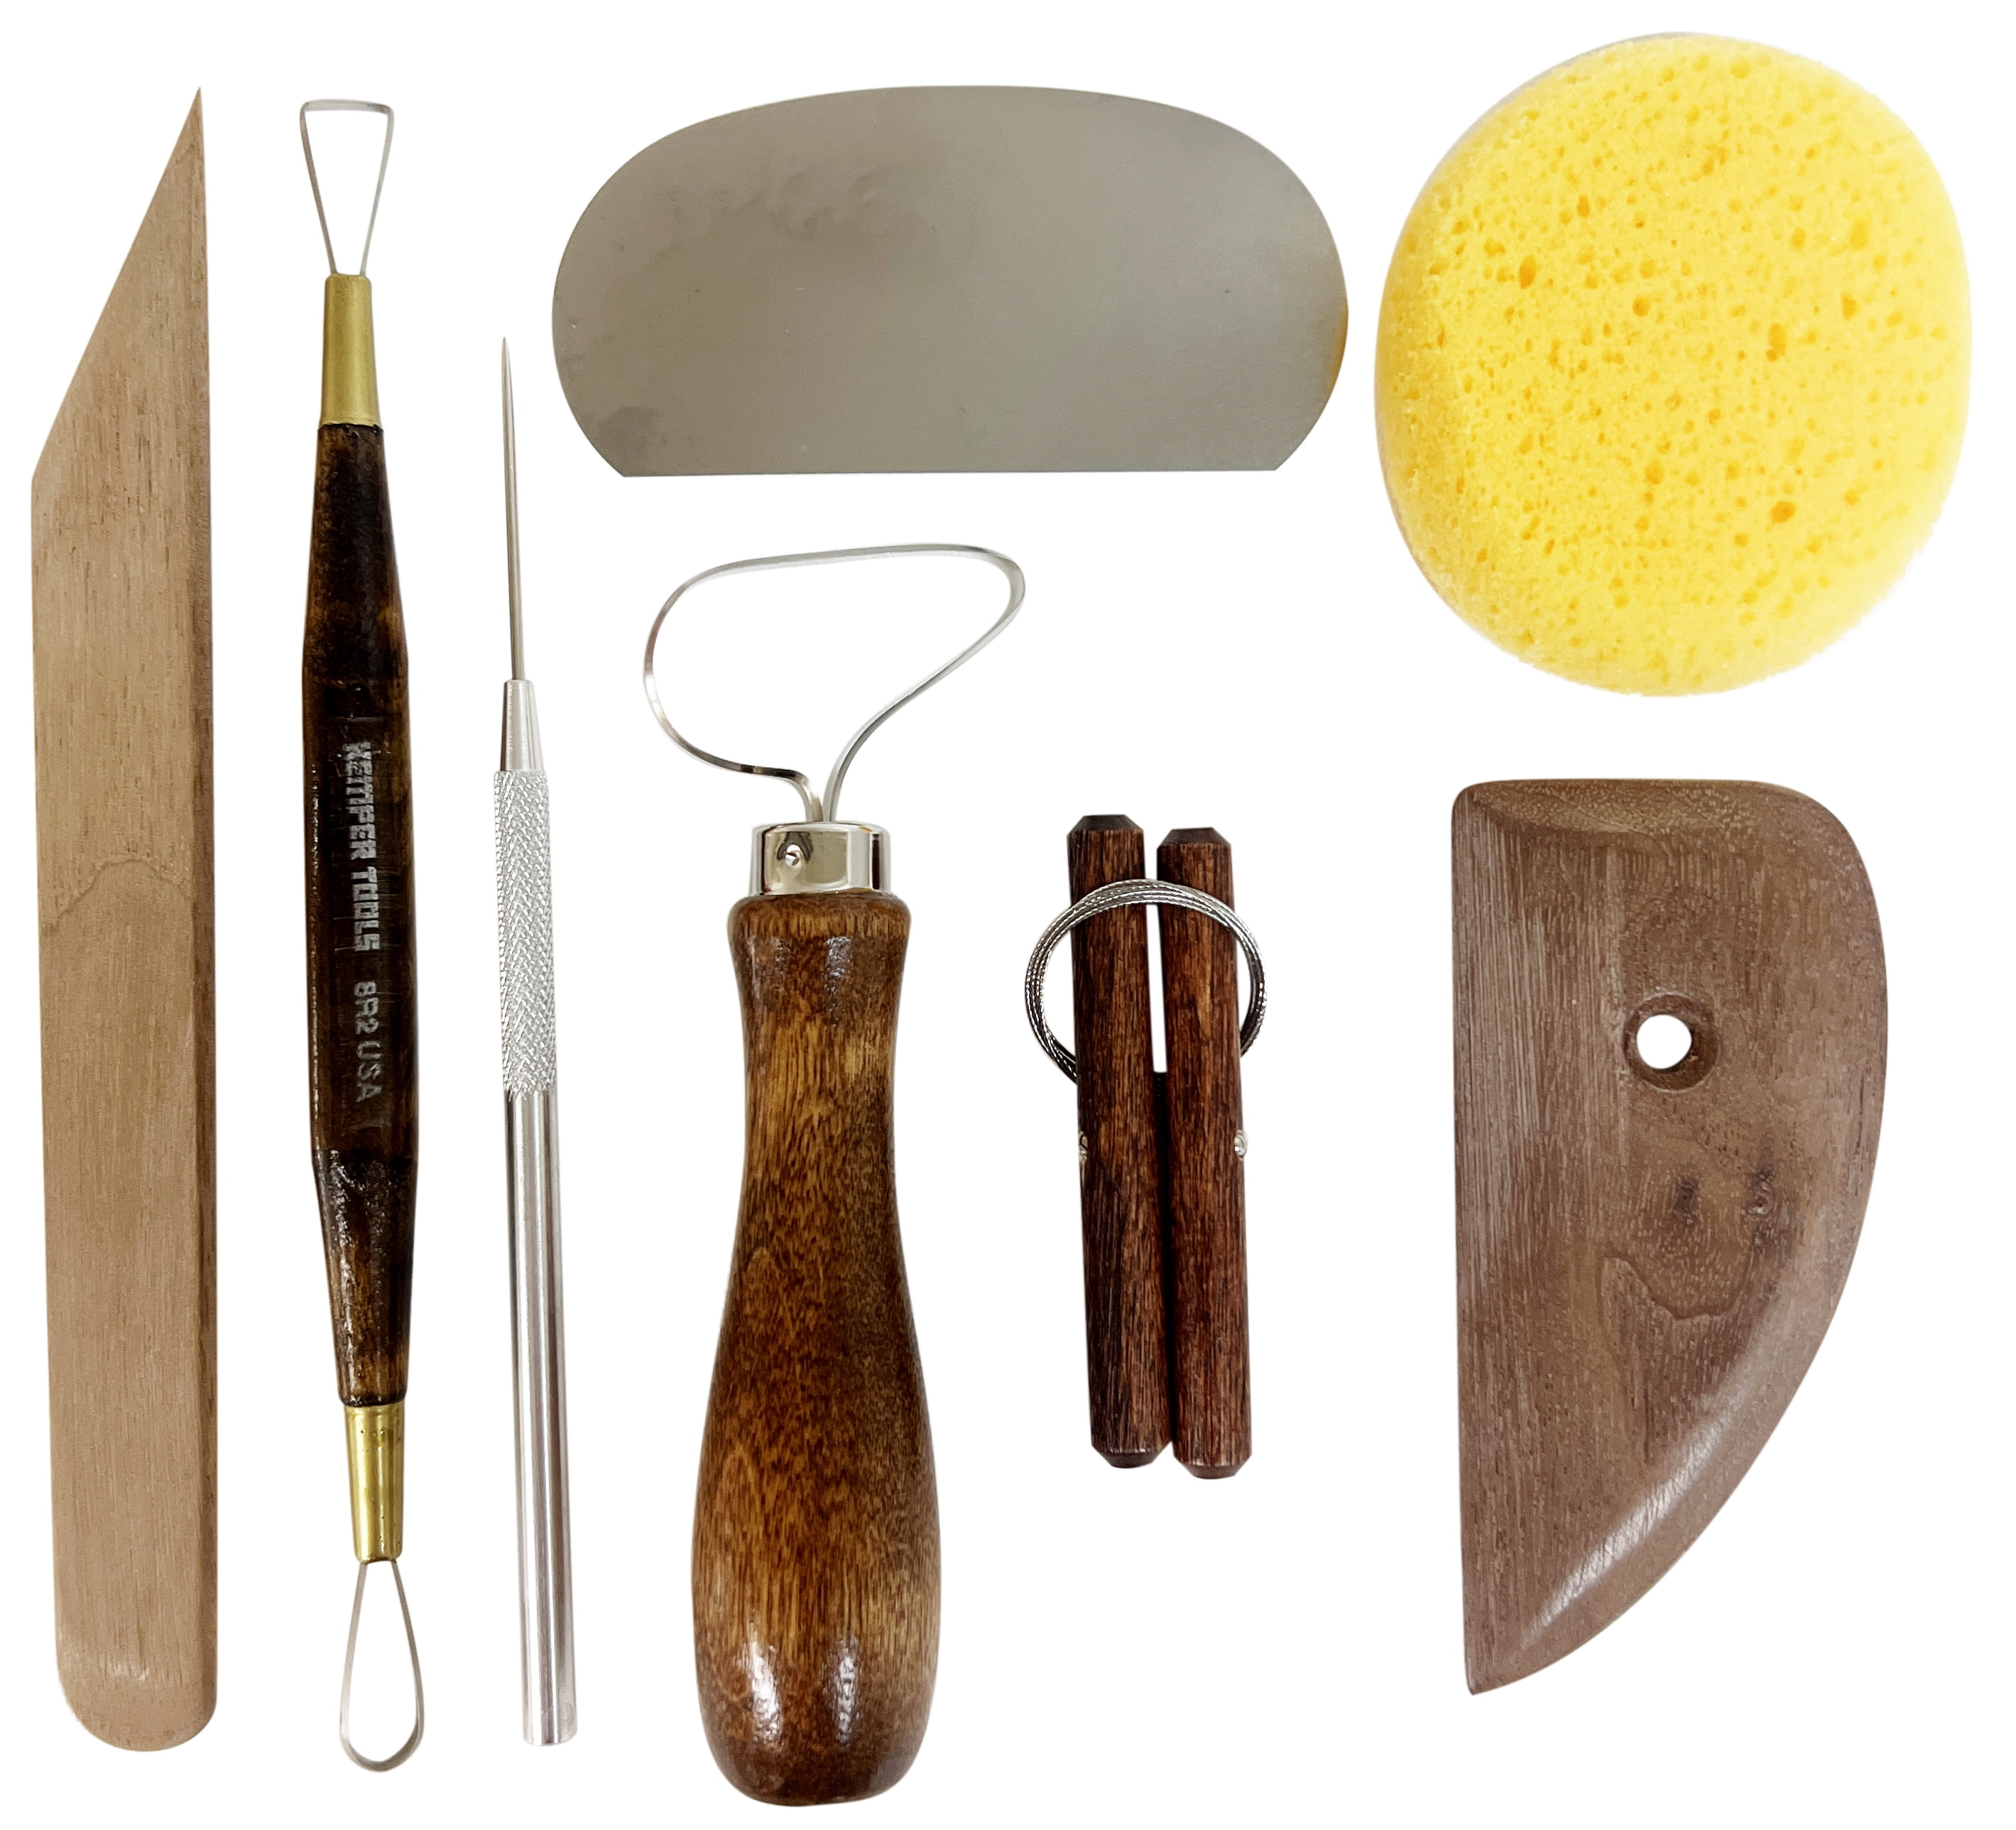 Kemper Potter's Tool Kit - Bray Clay